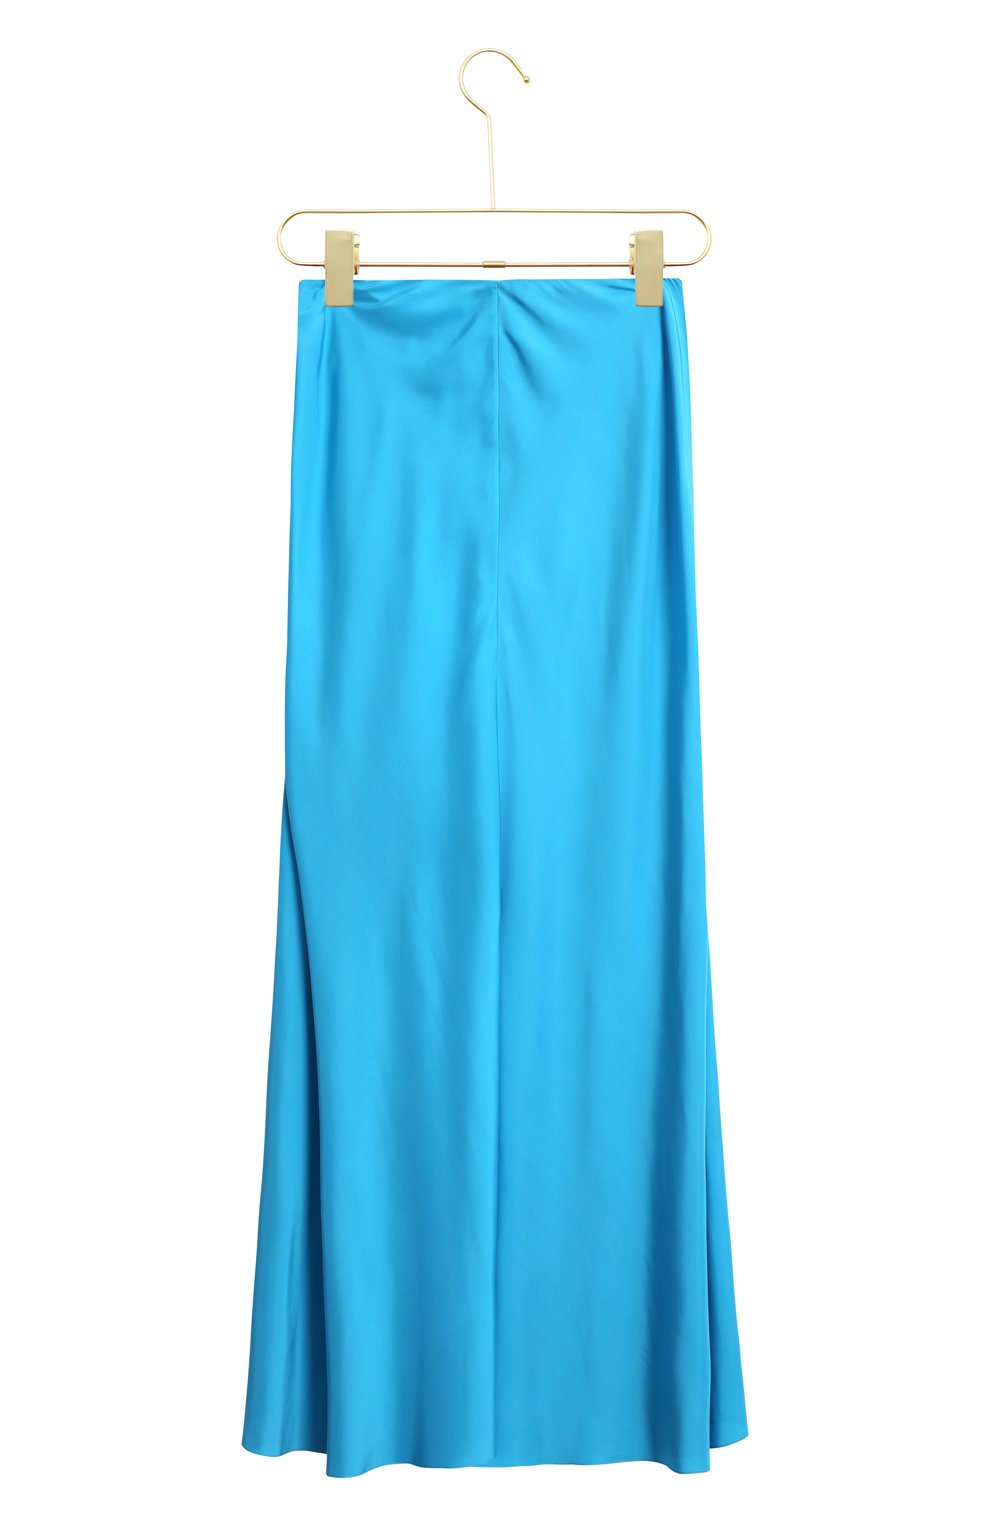 Шелковая юбка | Ralph Lauren | Голубой - 2